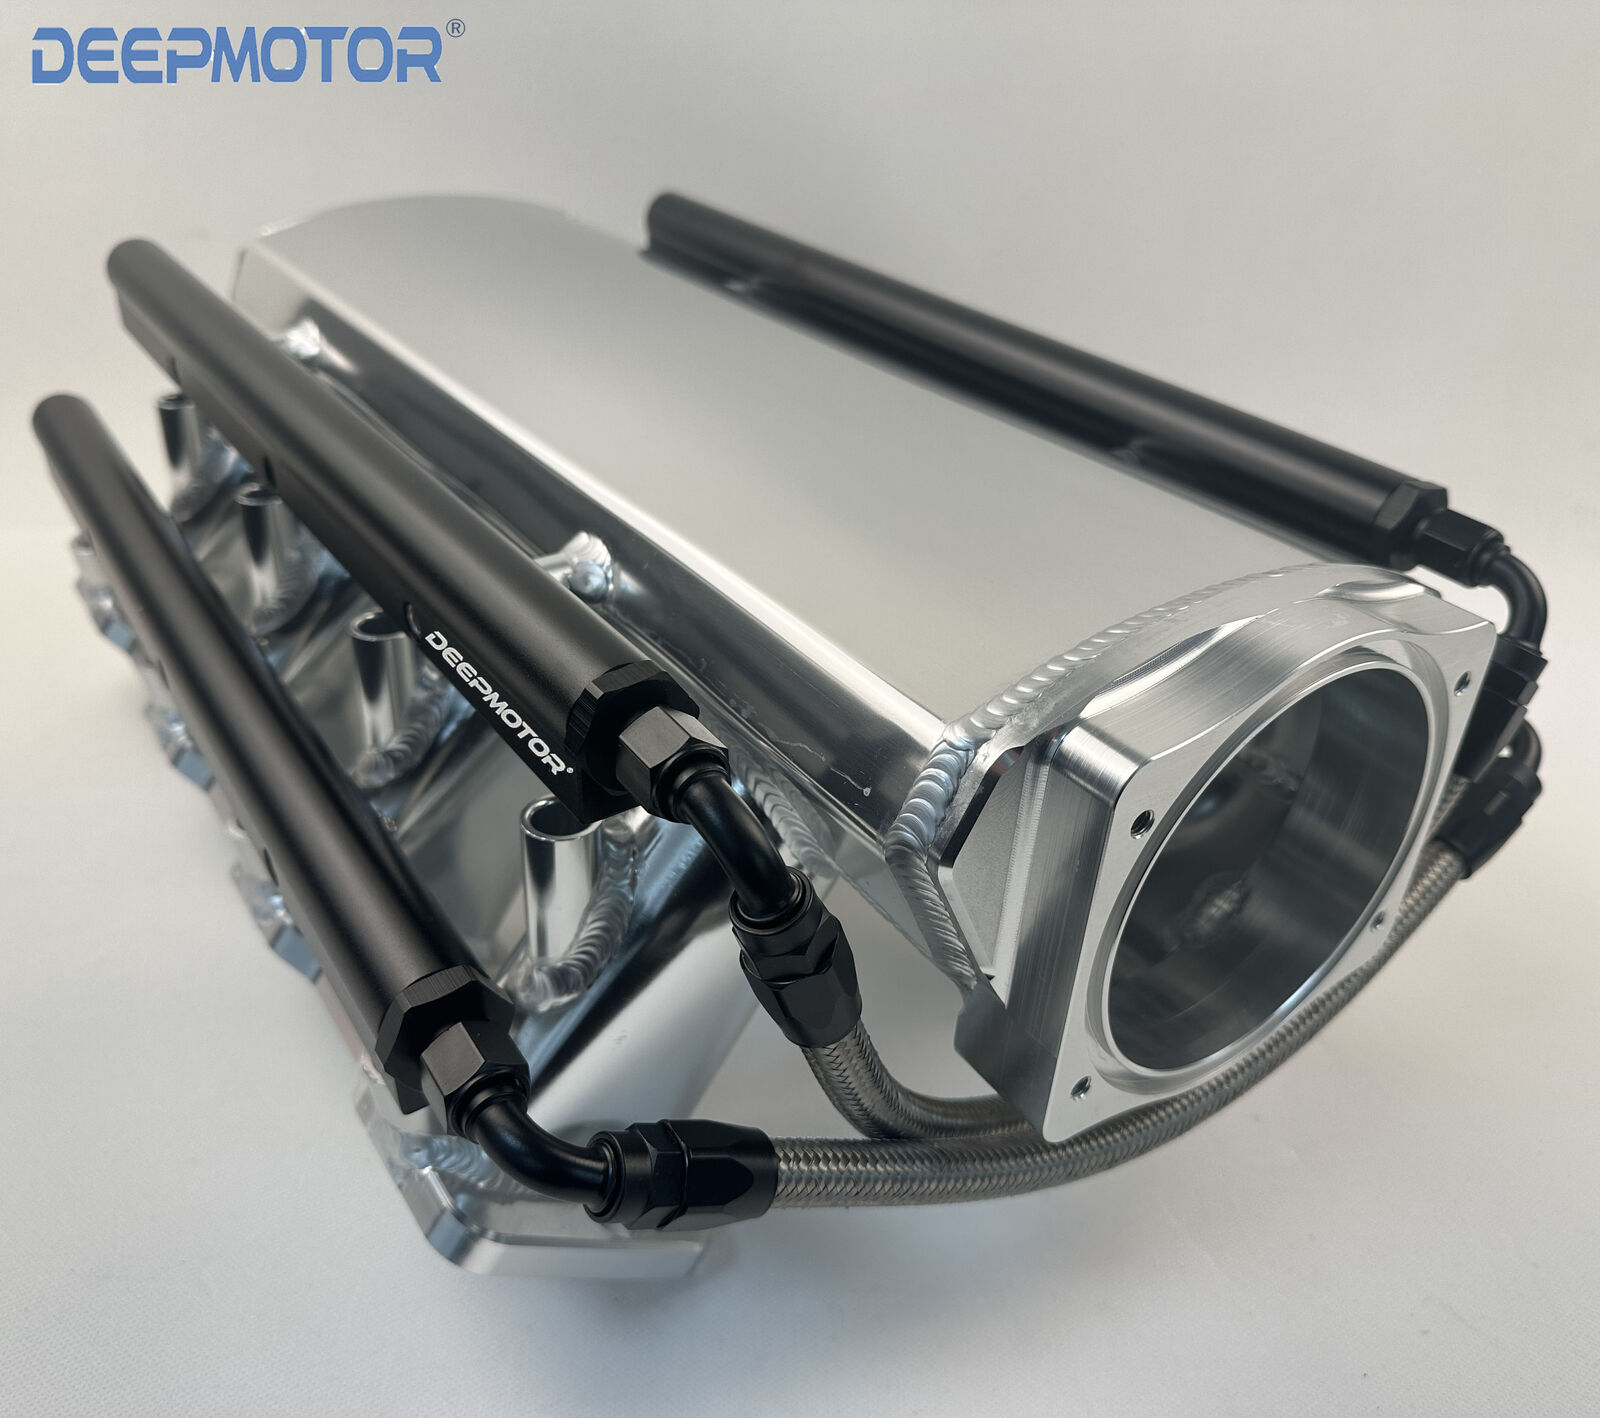 Deepmotor 102mm Dual Fuel Rails LS3 L92 Intake Manifold 16 injectors Silver